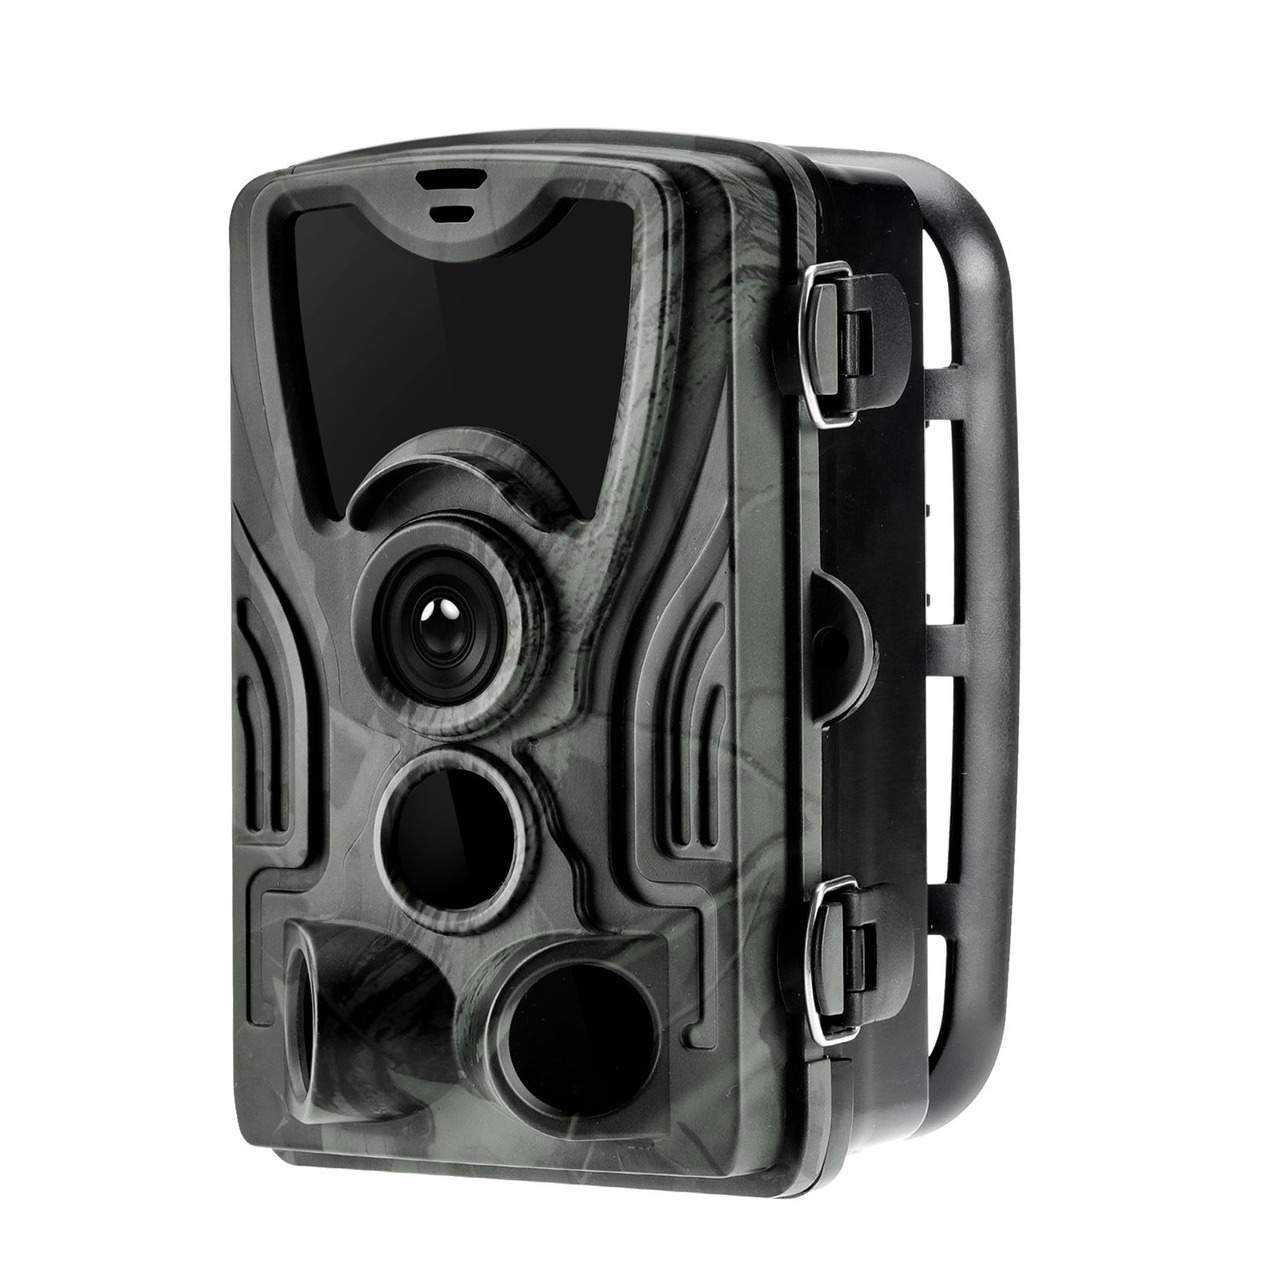 Braun Fotofalle - Wildkamera Scouting Cam BLACK550- 24 MP- IP65- 940 nm